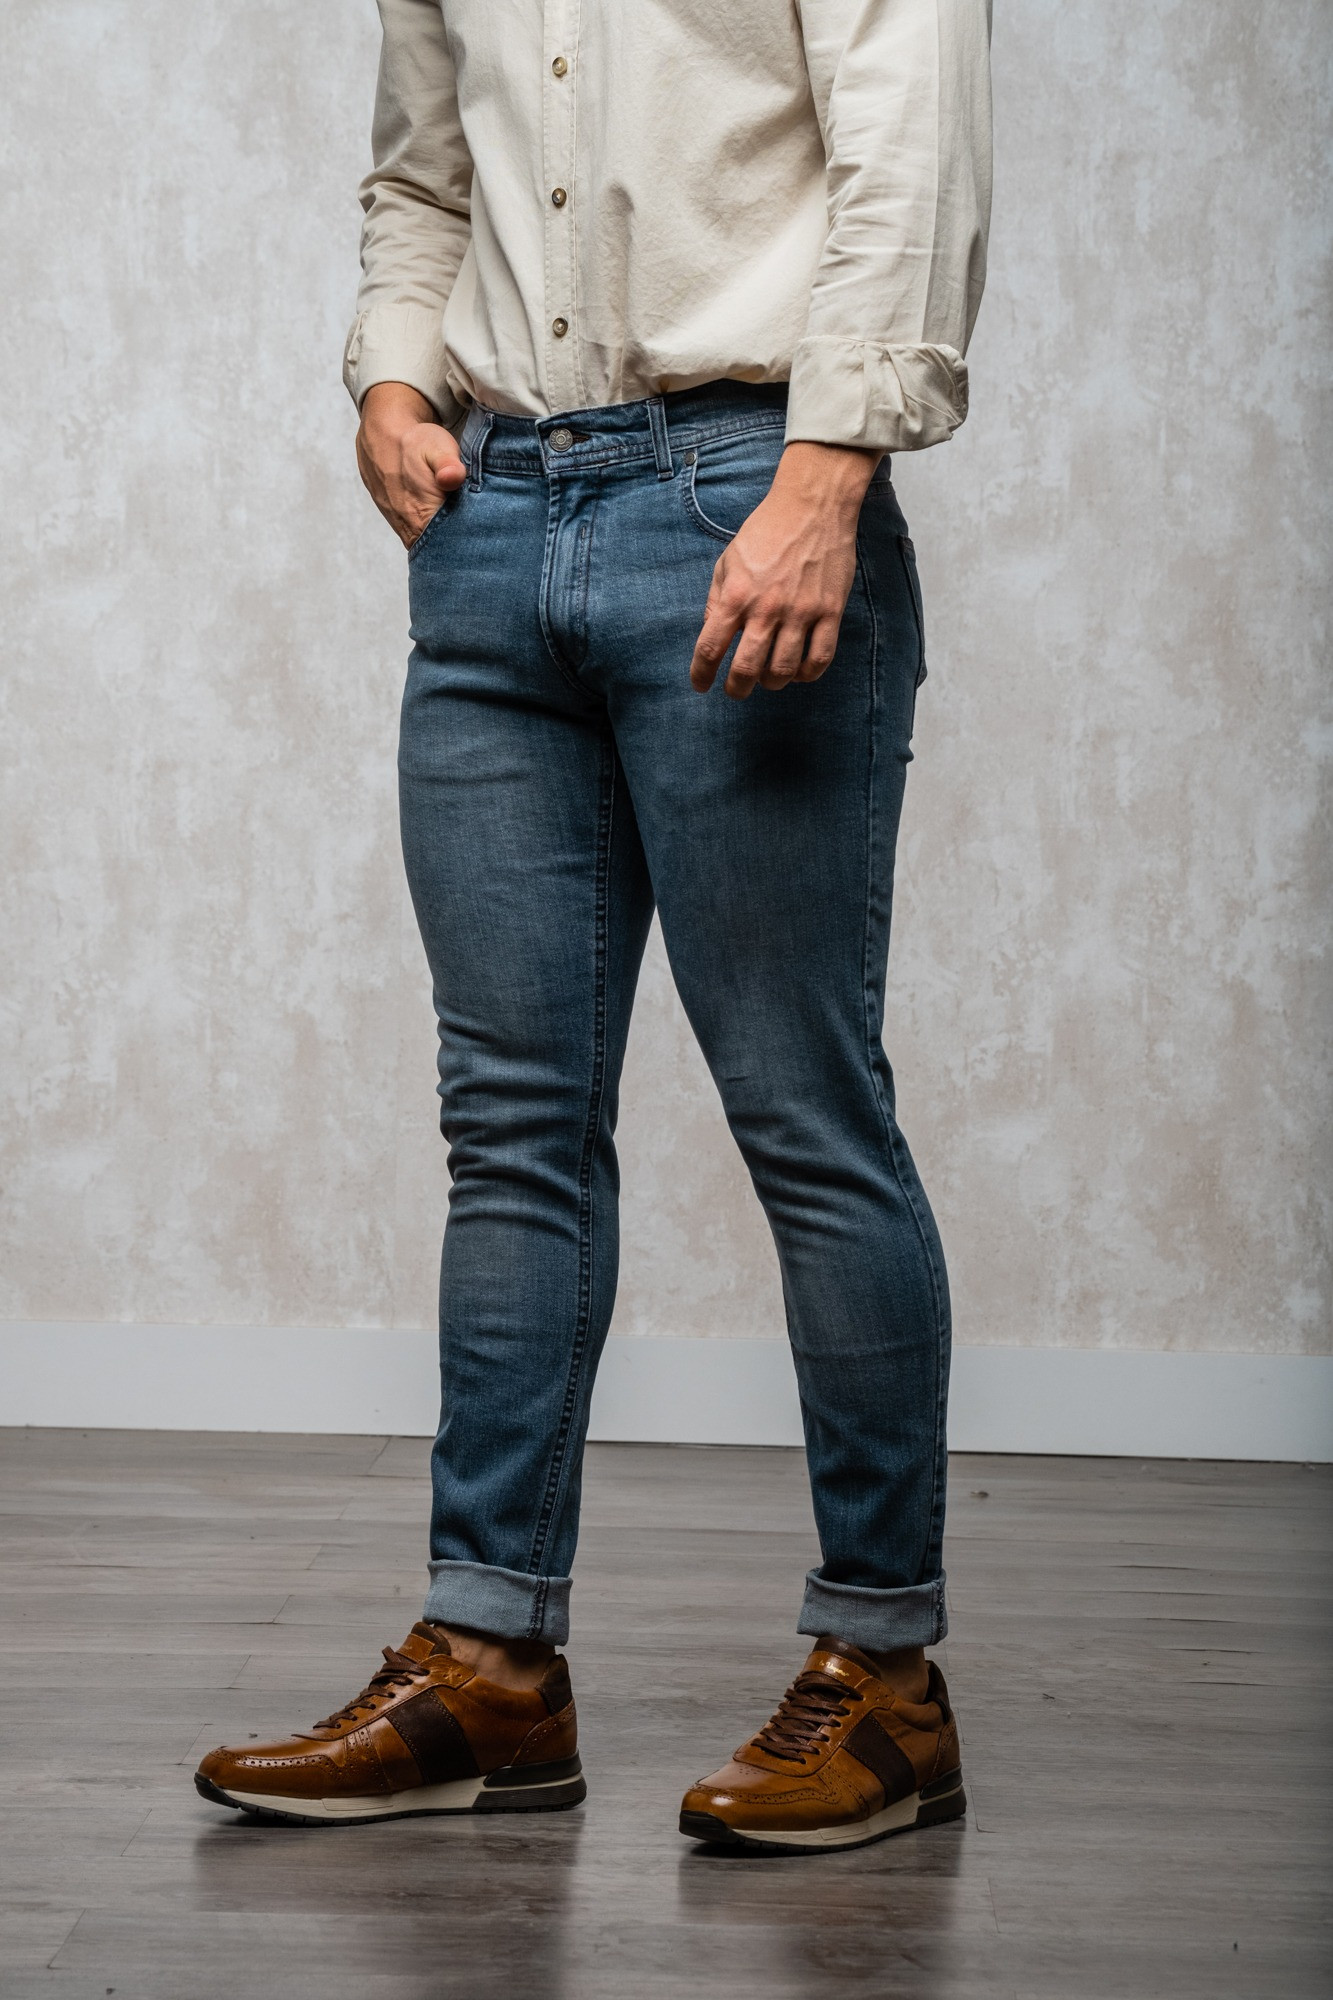 Un pantalón vaquero de corte skinny, color gris y fabricado en España. 

El tejido utilizado es de alta calidad y se caracteriza por su durabilidad y resistencia al desgaste. El corte skinny es un corte ajustado que sigue las líneas del cuerpo, dando un